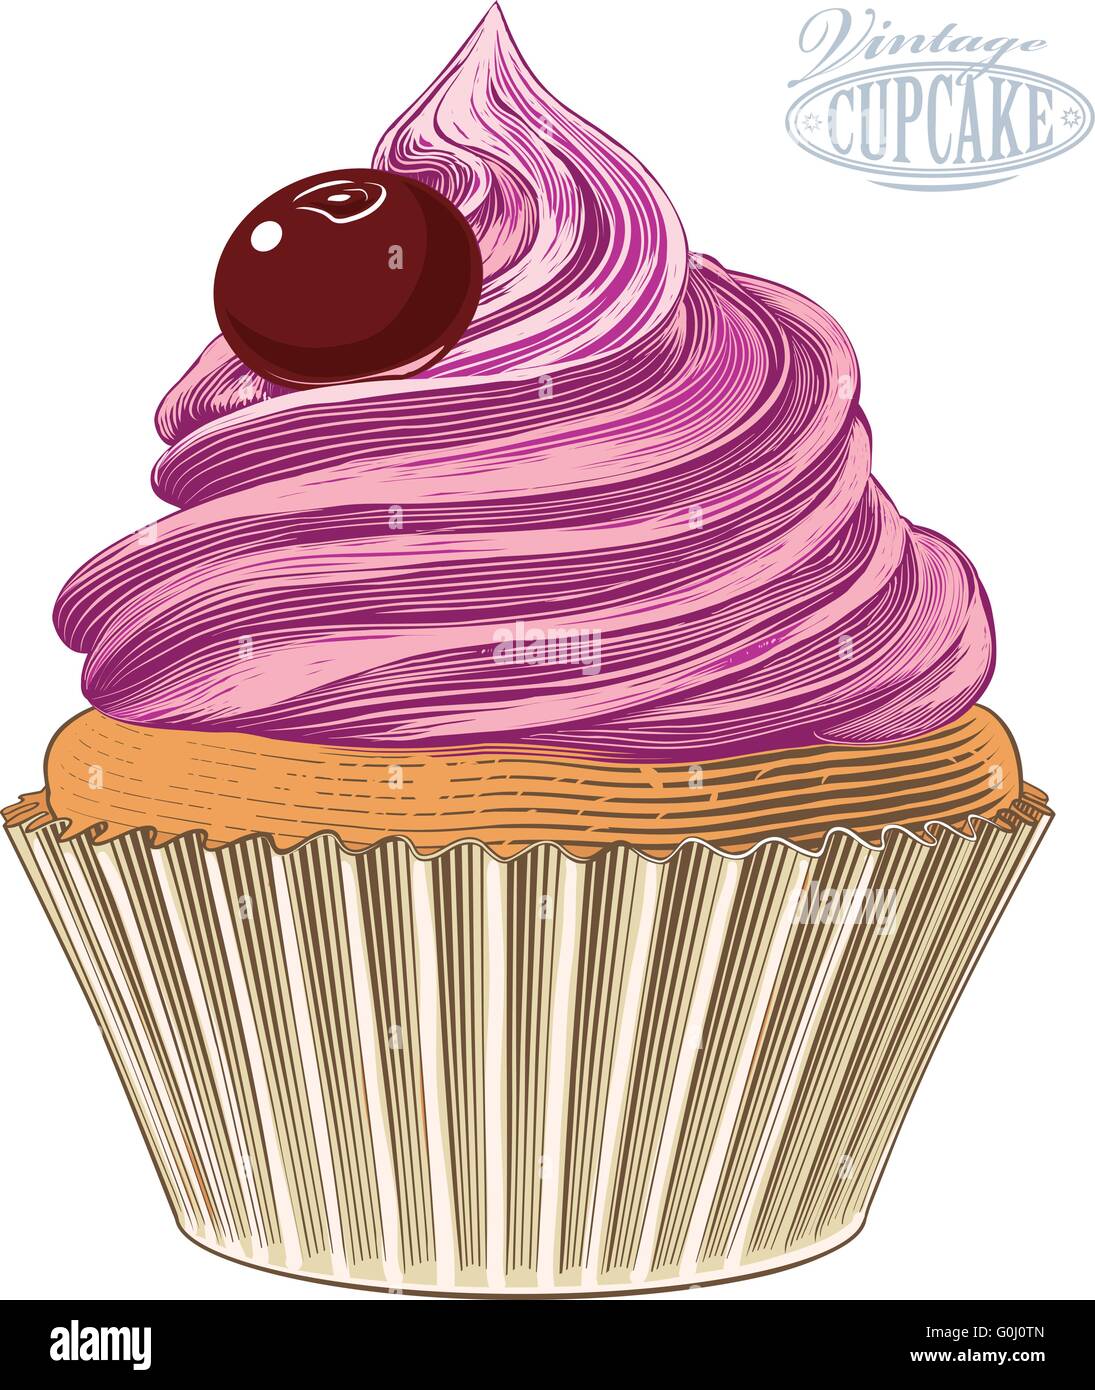 En Cupcake gravure sur fond transparent Illustration de Vecteur